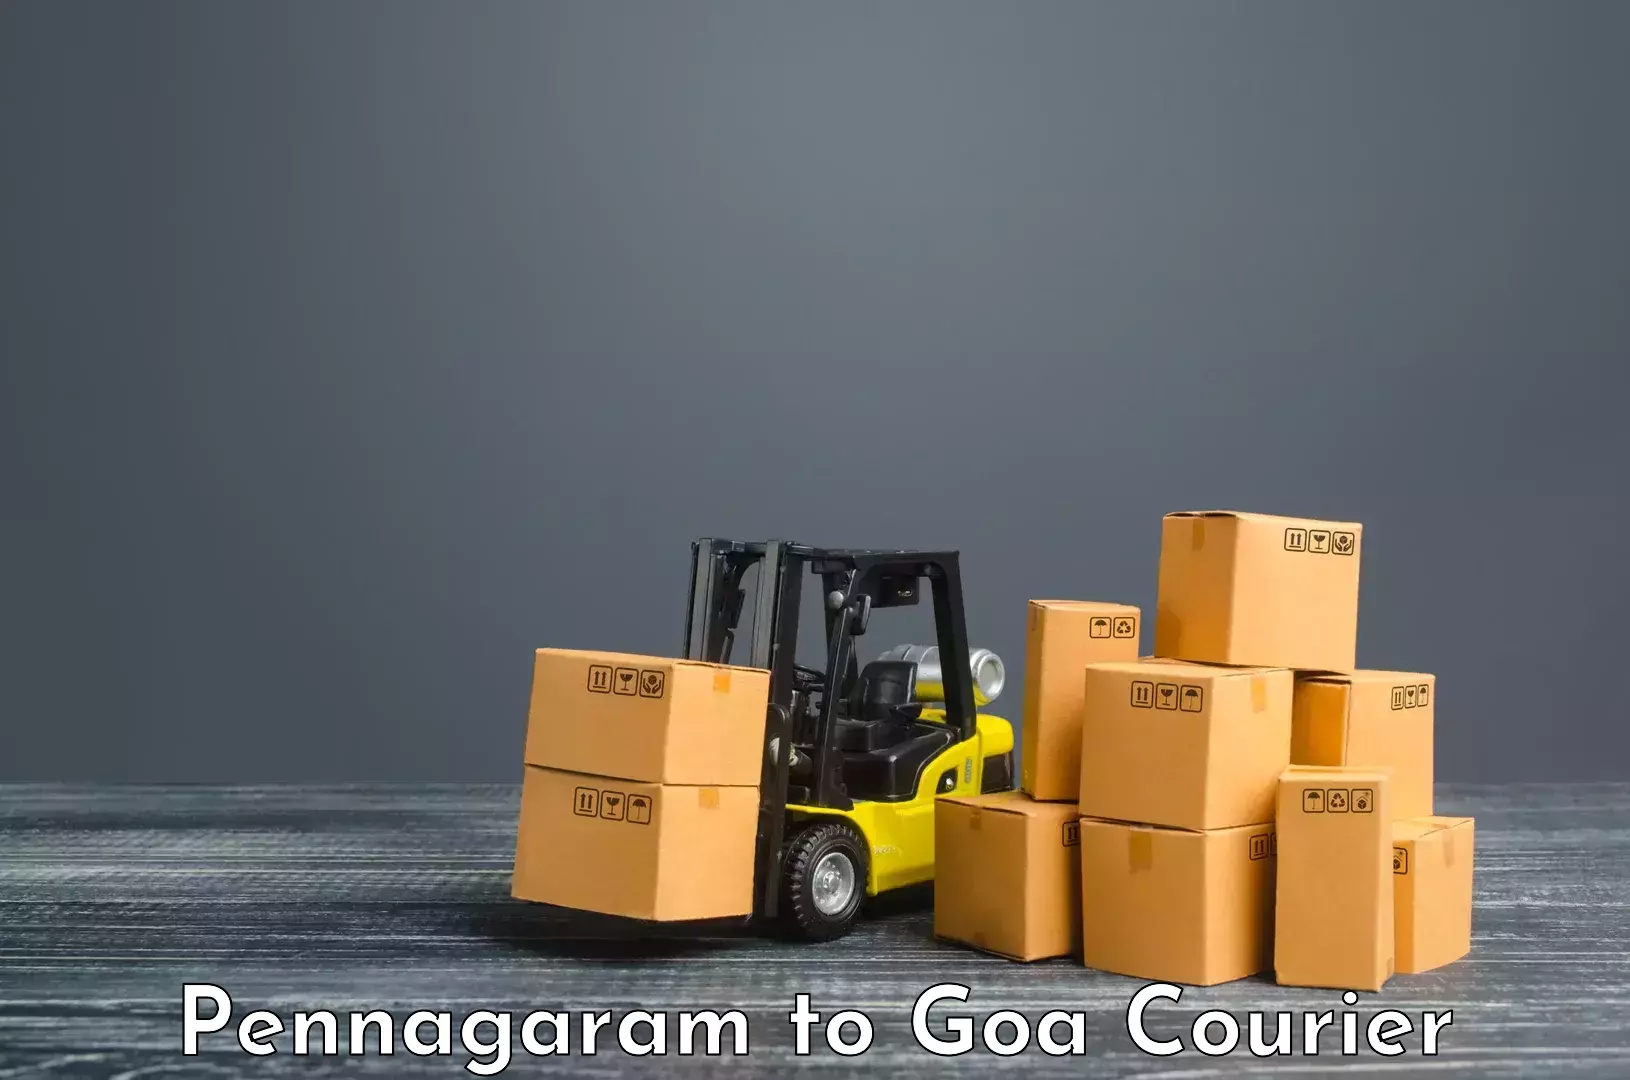 User-friendly courier app Pennagaram to South Goa